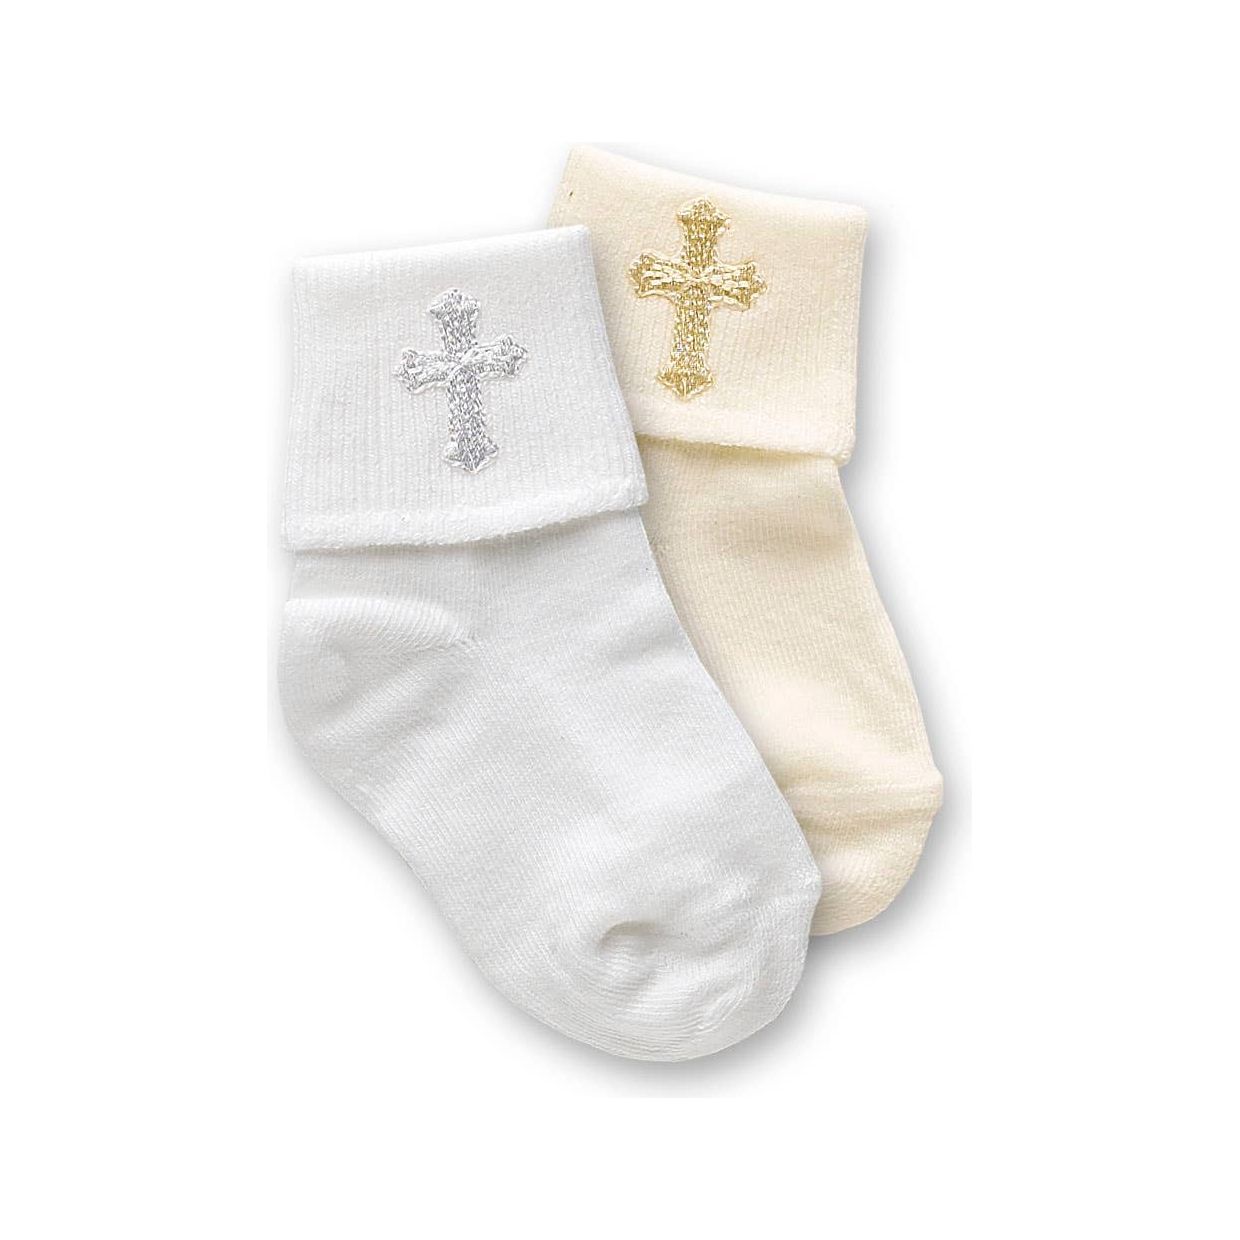 Christening Socks Baby Cream or White